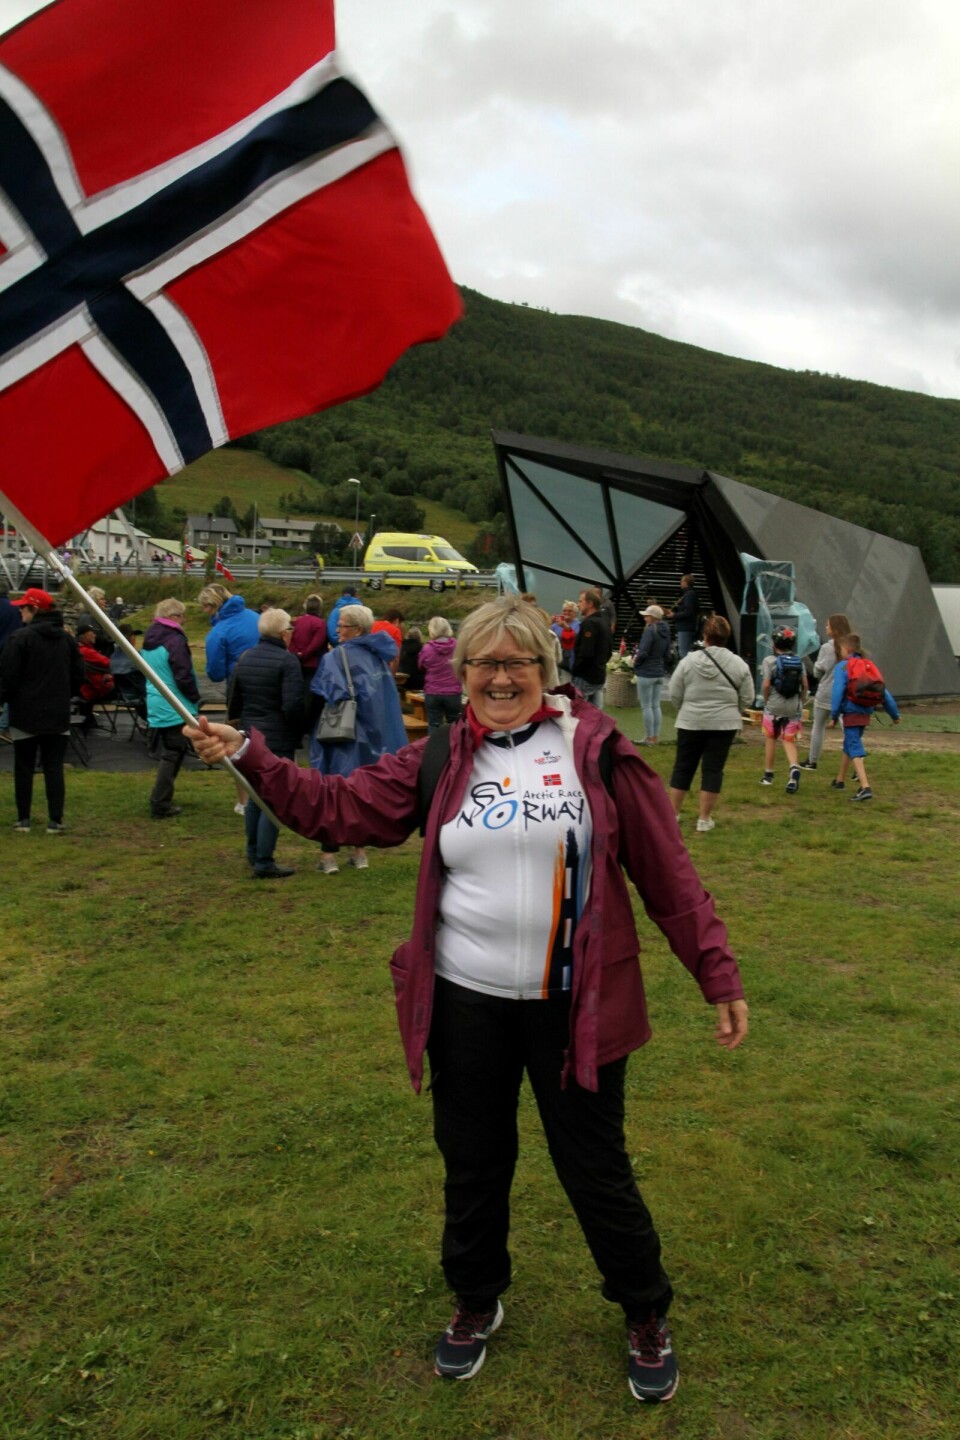 EKS-POLITIKER OF FYLKESMANN: Tidligere Høyre-politiker Elisabeth Aspaker er fylkesmann i Troms. Her avbildet i Nordkjosbotn under Arctic Race i fjor. Foto: Privat